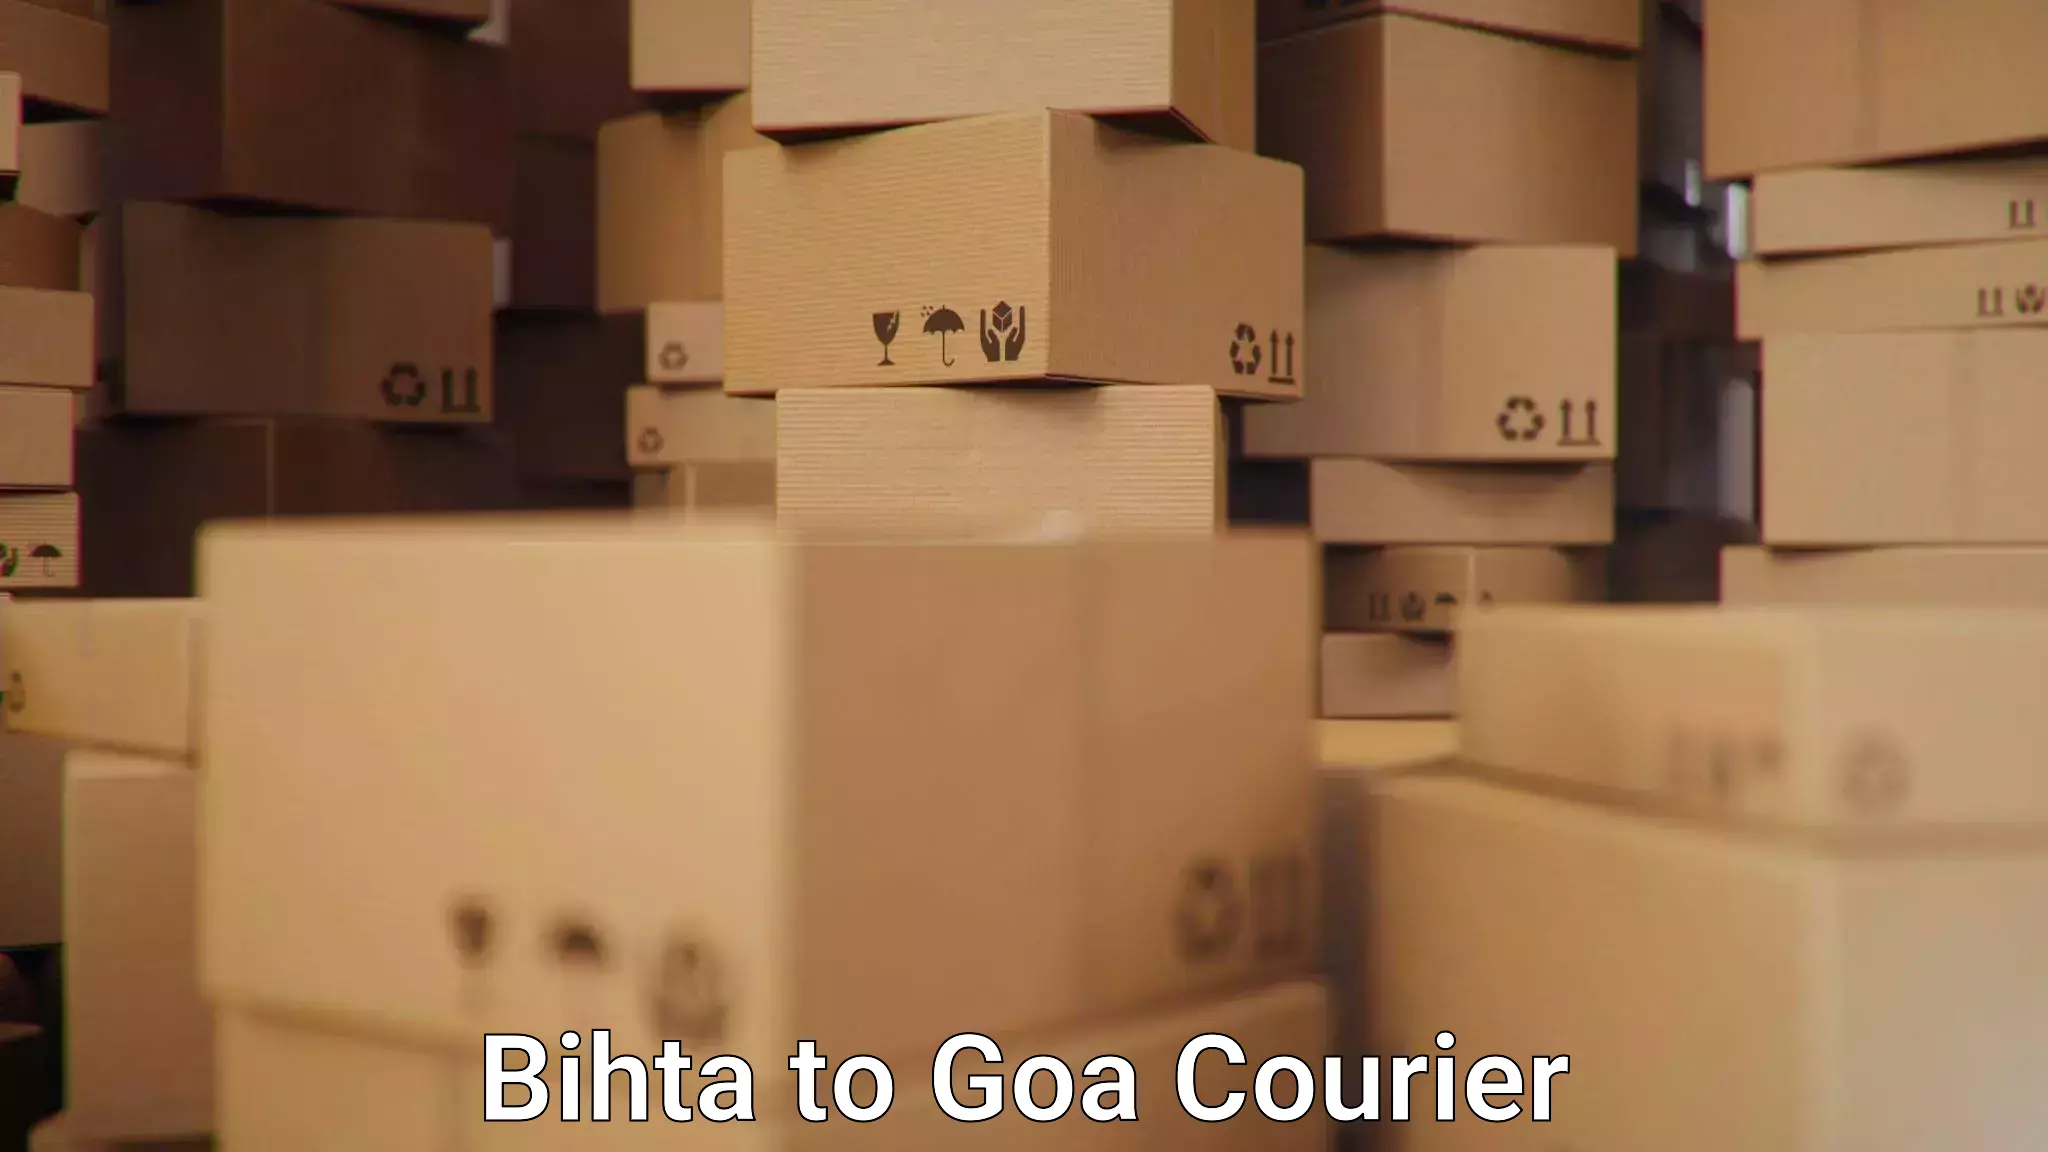 Pharmaceutical courier Bihta to Ponda